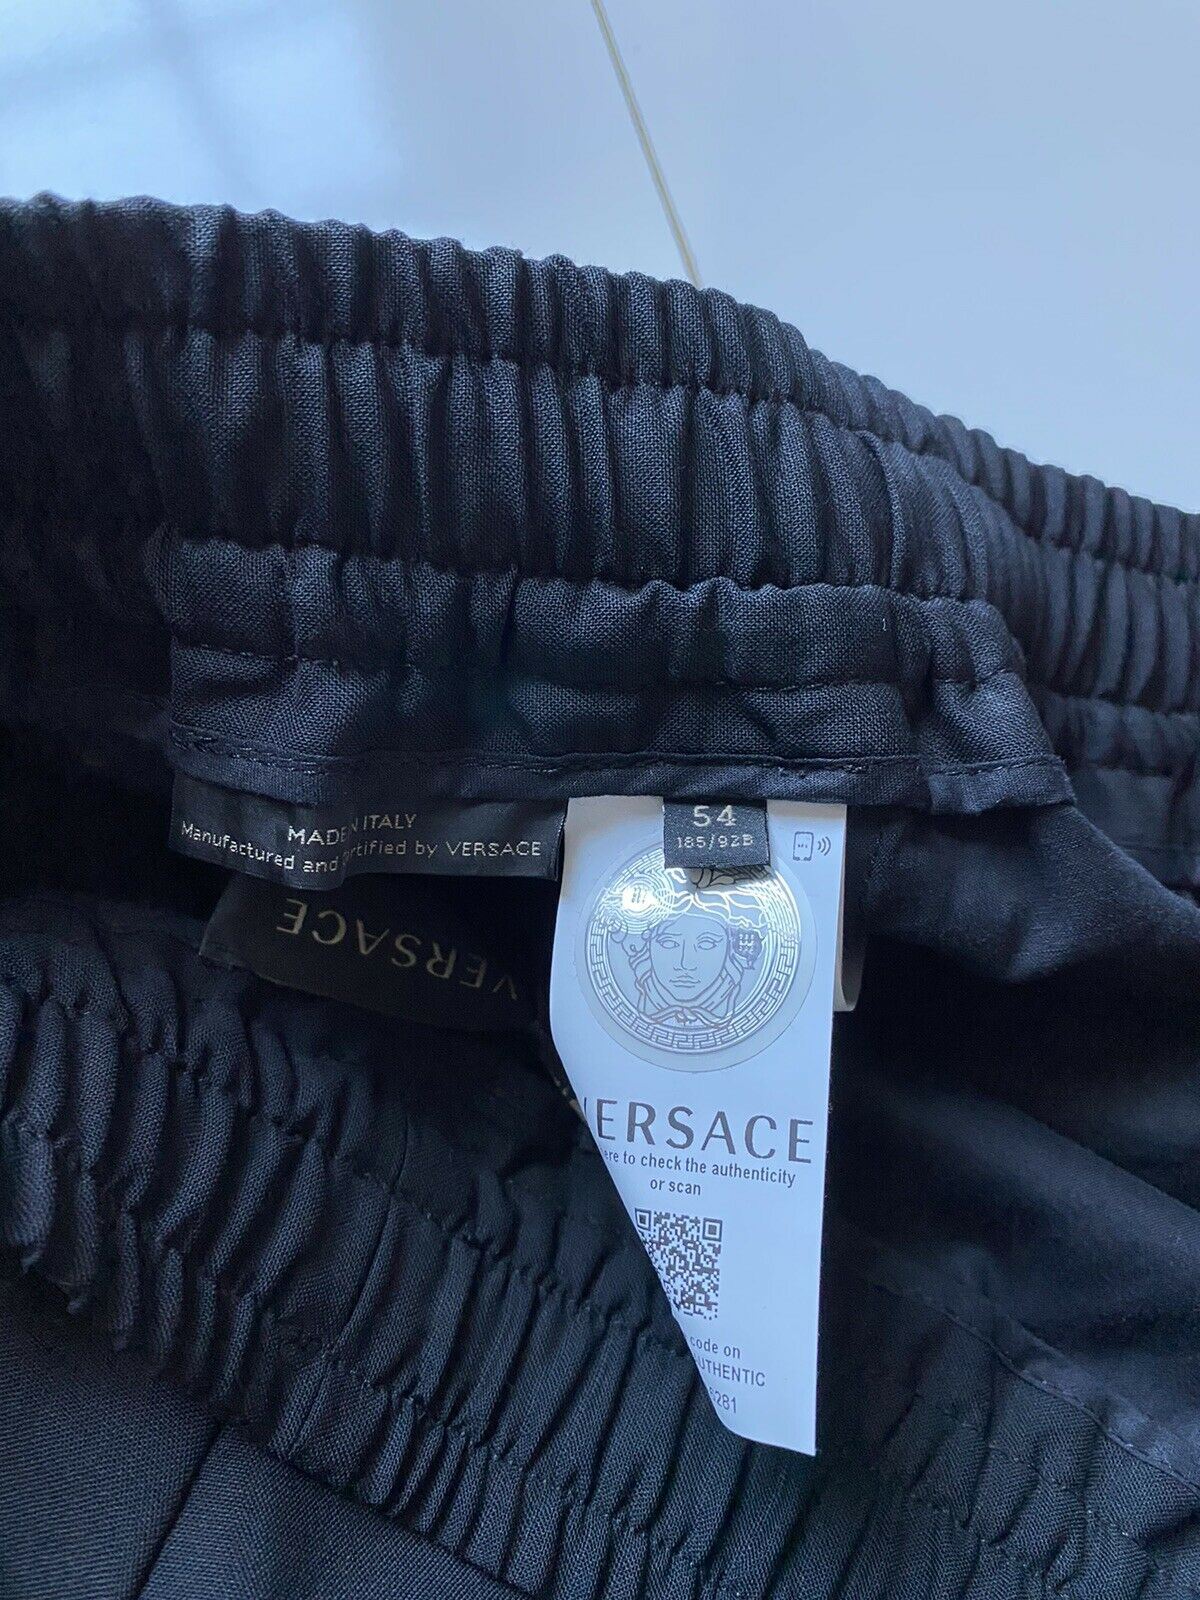 Мужские черные шерстяные брюки Versace NWT, 595 долларов США, размер 38, США (54 евро), производство Италия, A83072 